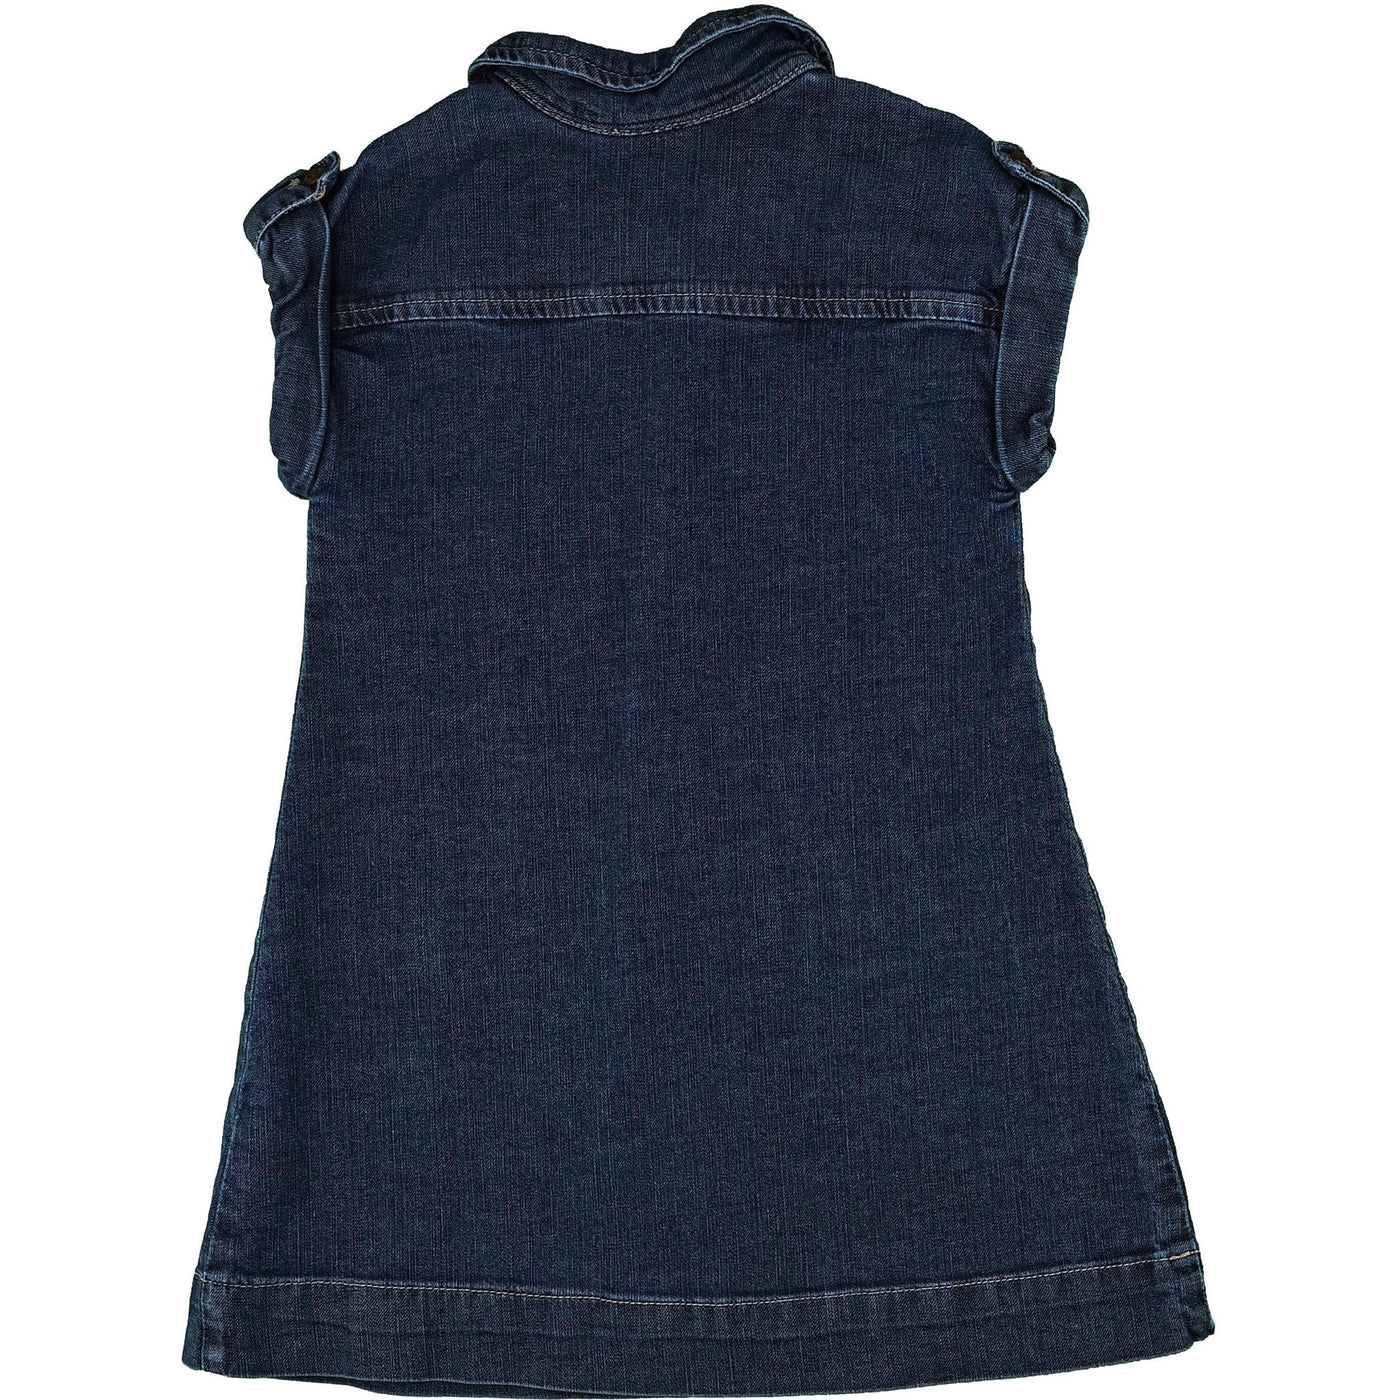 Robe à manches courtes de seconde main en jean pour enfant fille de 3 ans - photo verso